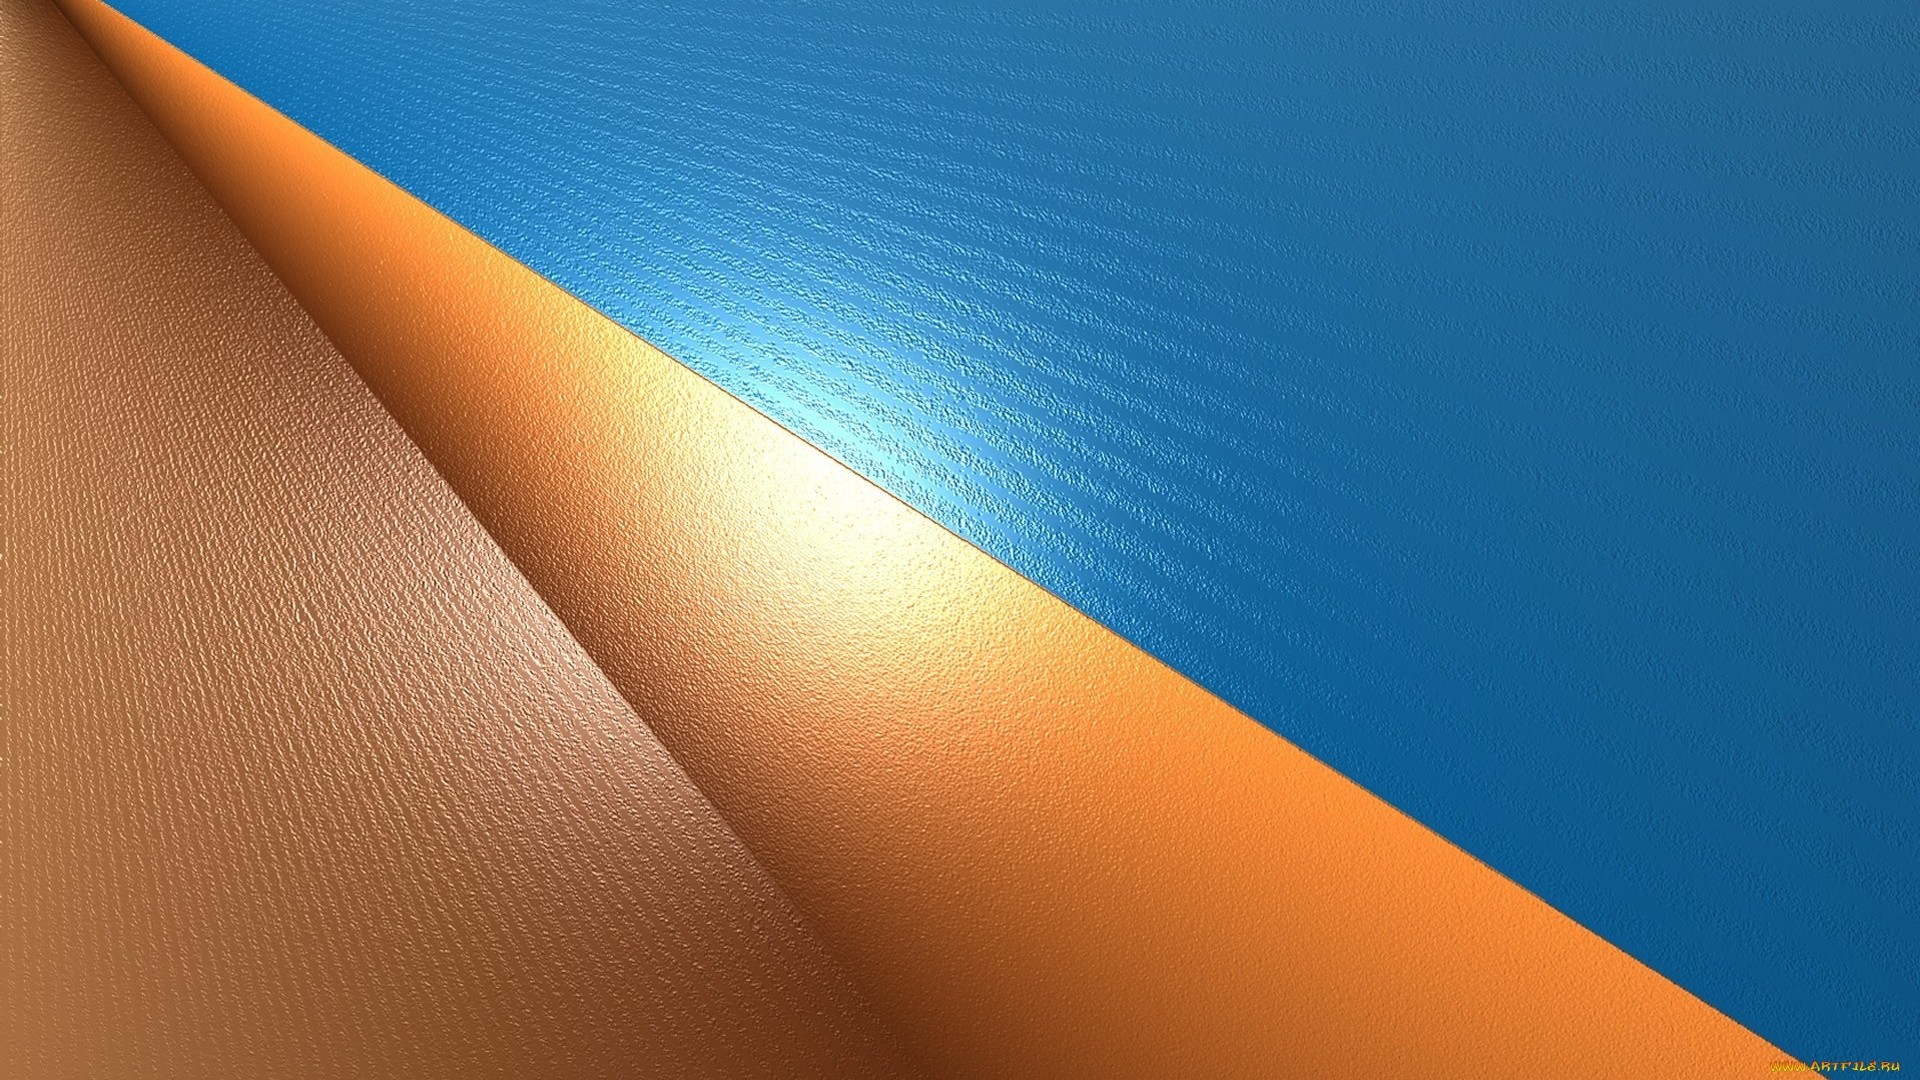 Solid Color HD Wallpaper